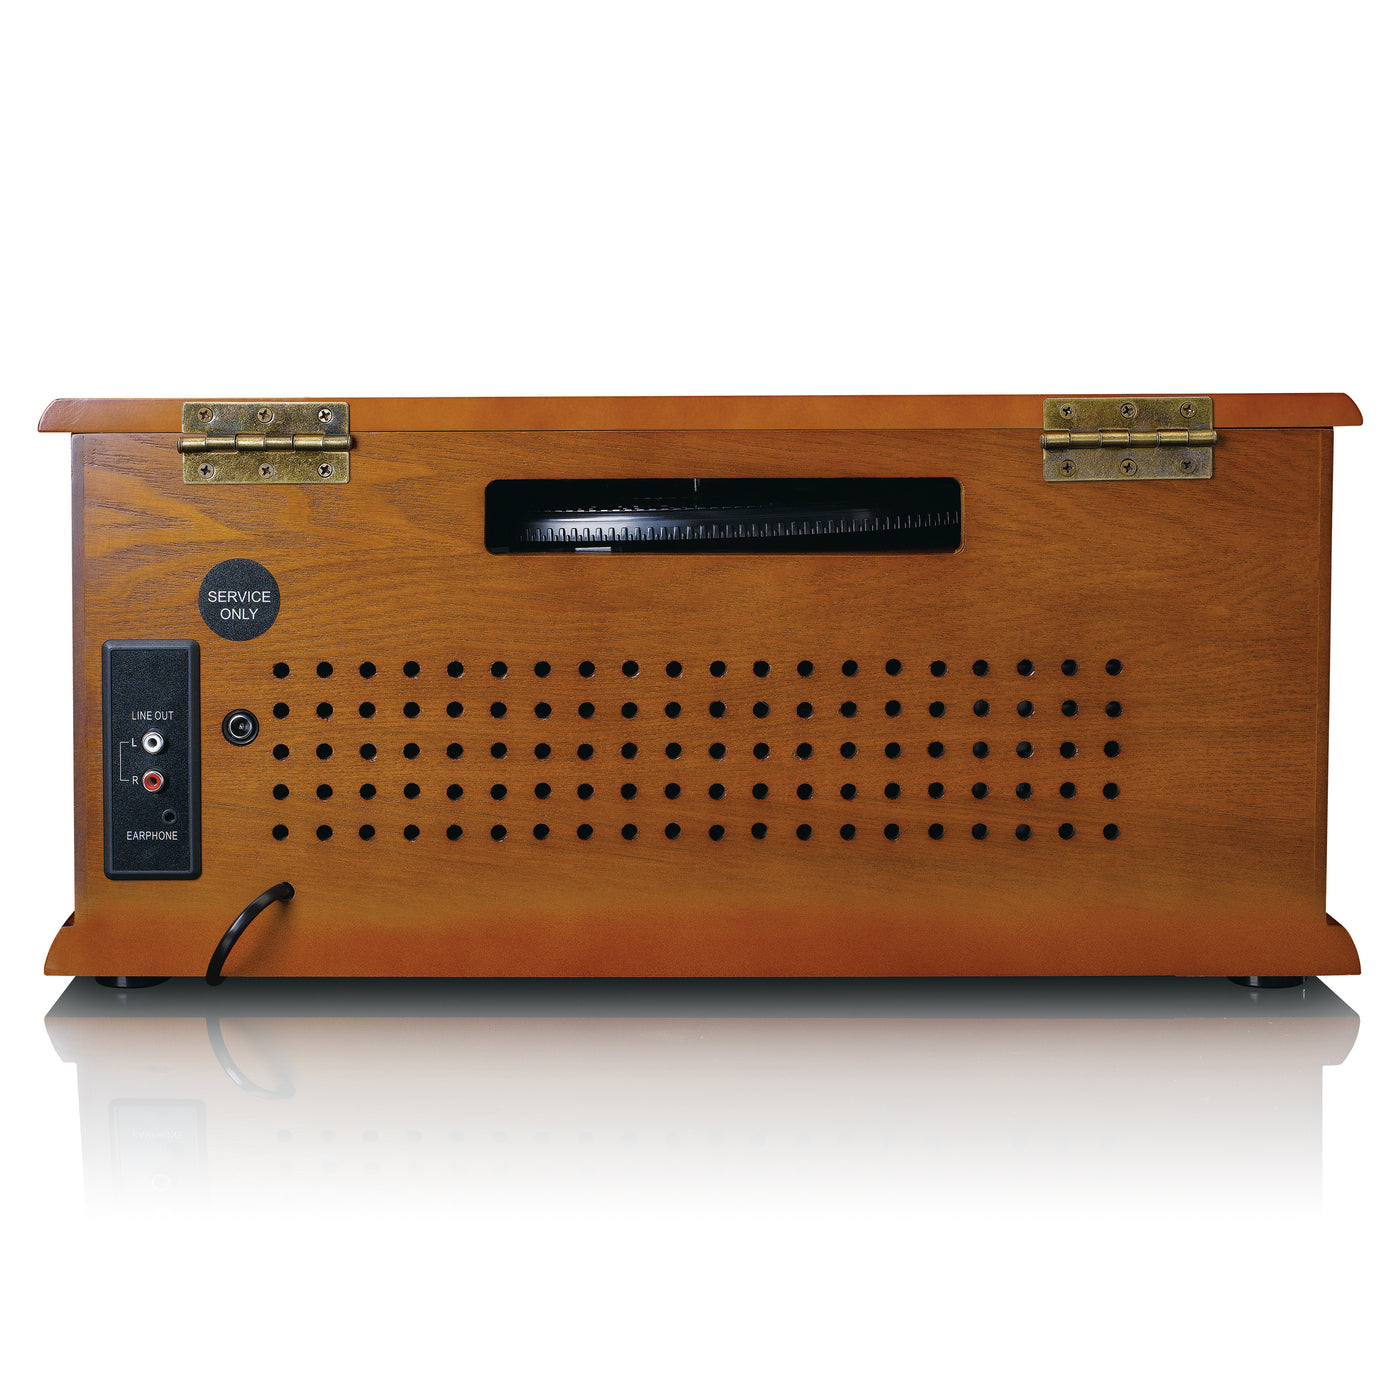 CLASSIC PHONO TCD-2570 - Platenspeler met DAB+/FM radio, USB encoding, CD- en casettespeler - Hout